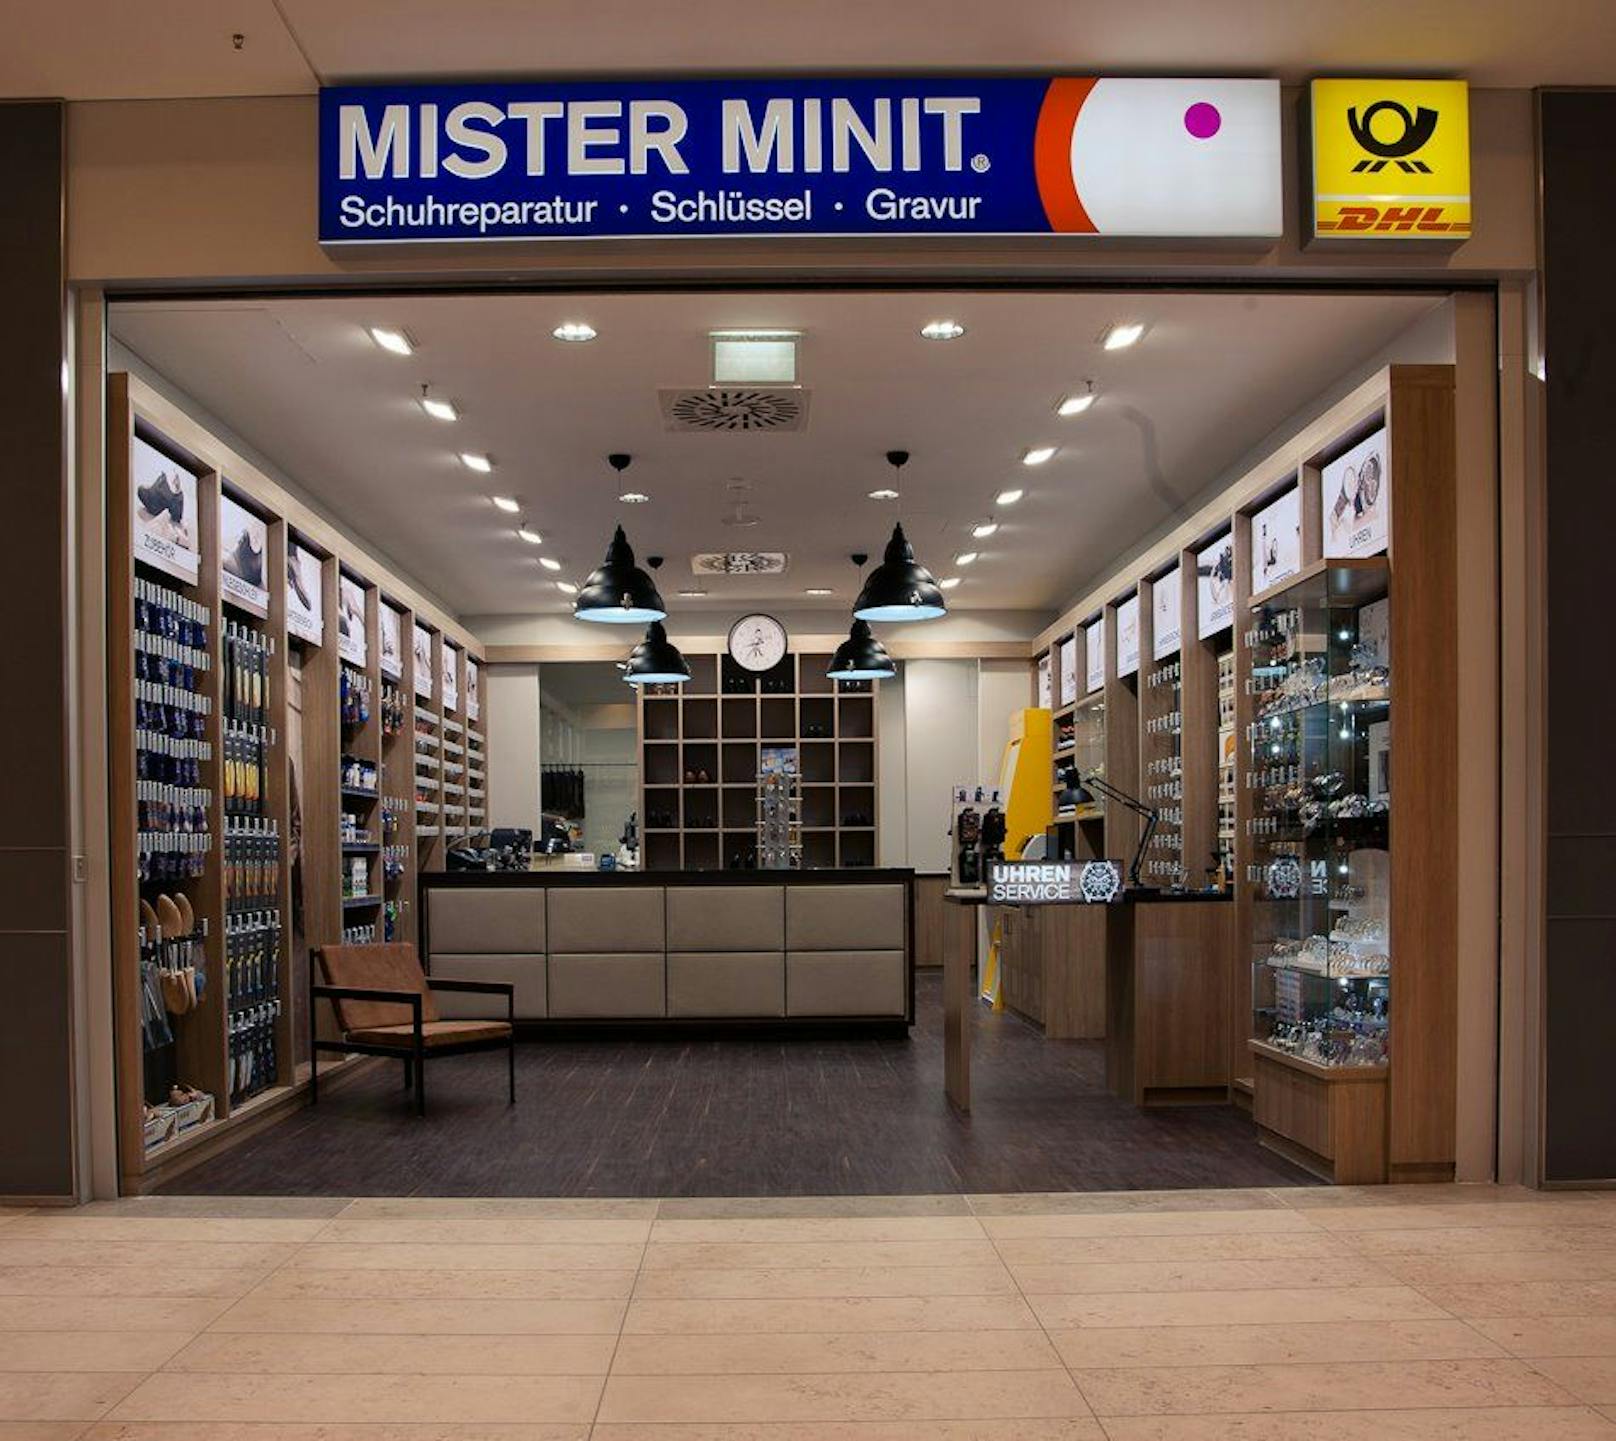 Eine "Mister Minit" Filiale in Deutschland